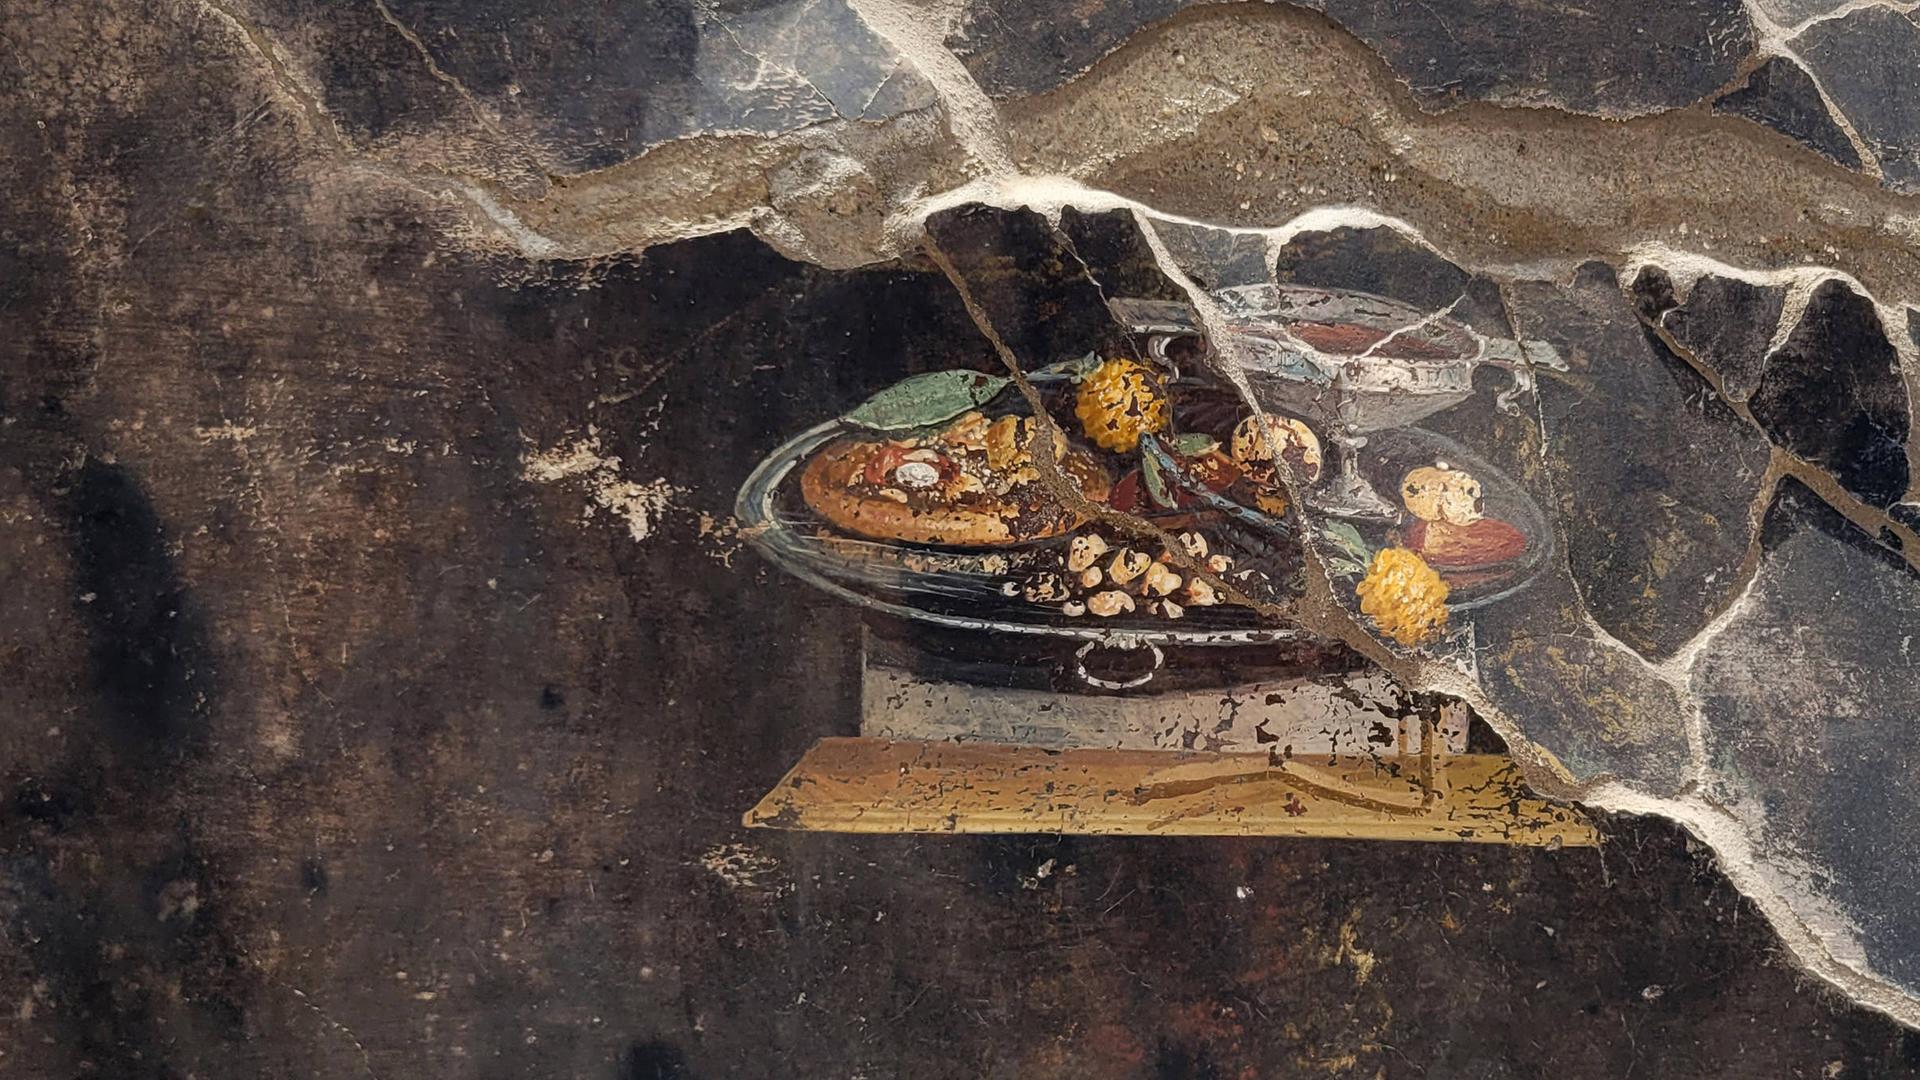 Ein Fresko in Pompeji zeigt möglicherweise die Abbildung eines Vorläufers der modernen Pizza. Ein belegter Teigfladen, allerdings ohne Tomaten und Käse, ist auf dem rund 2.000 Jahre alten Gemälde zu sehen.